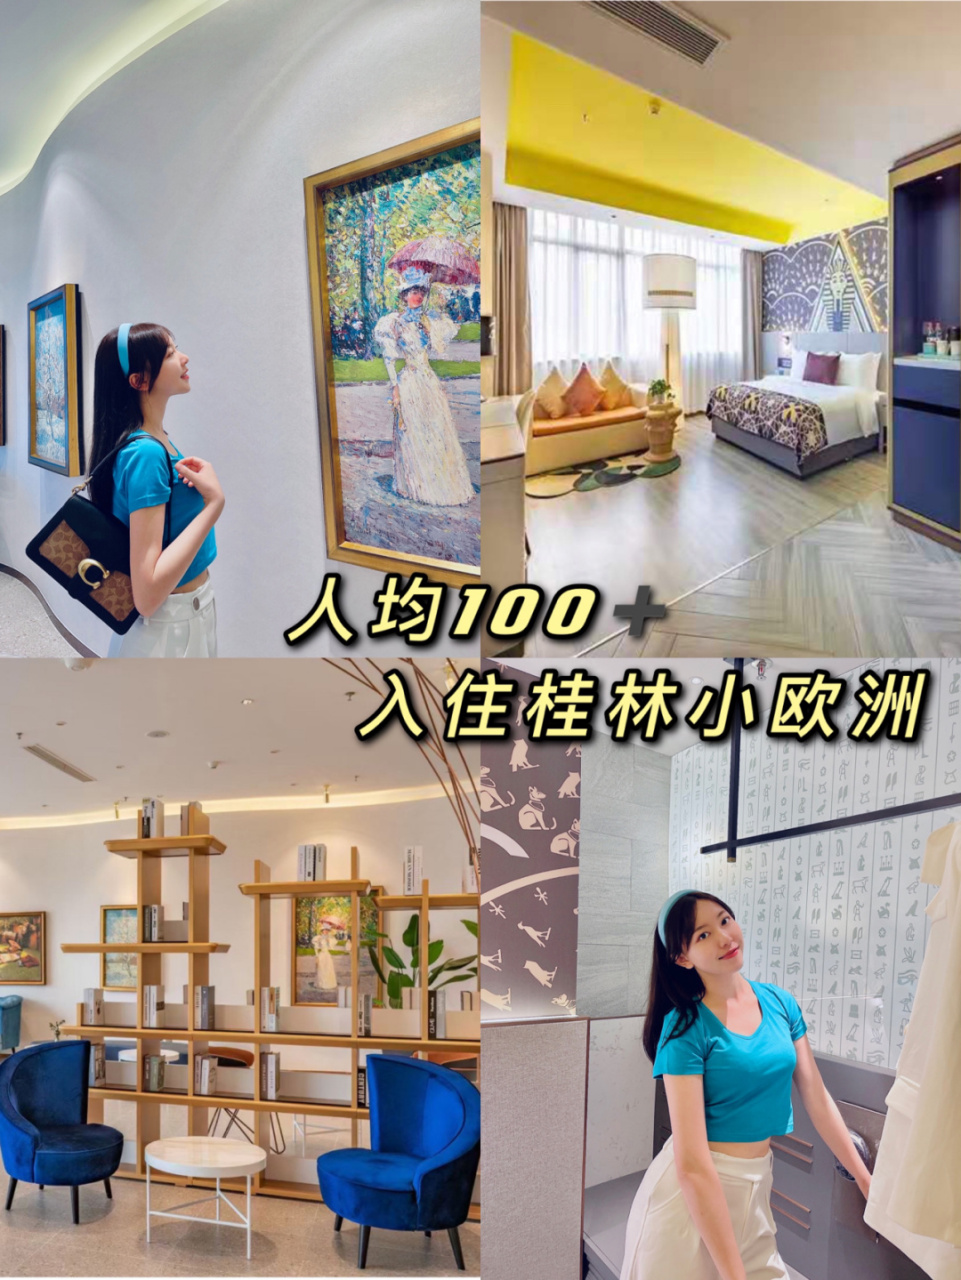 三月三入住桂林兰欧酒店,就像住进了艺术馆~ 61 90 满目琳琅的